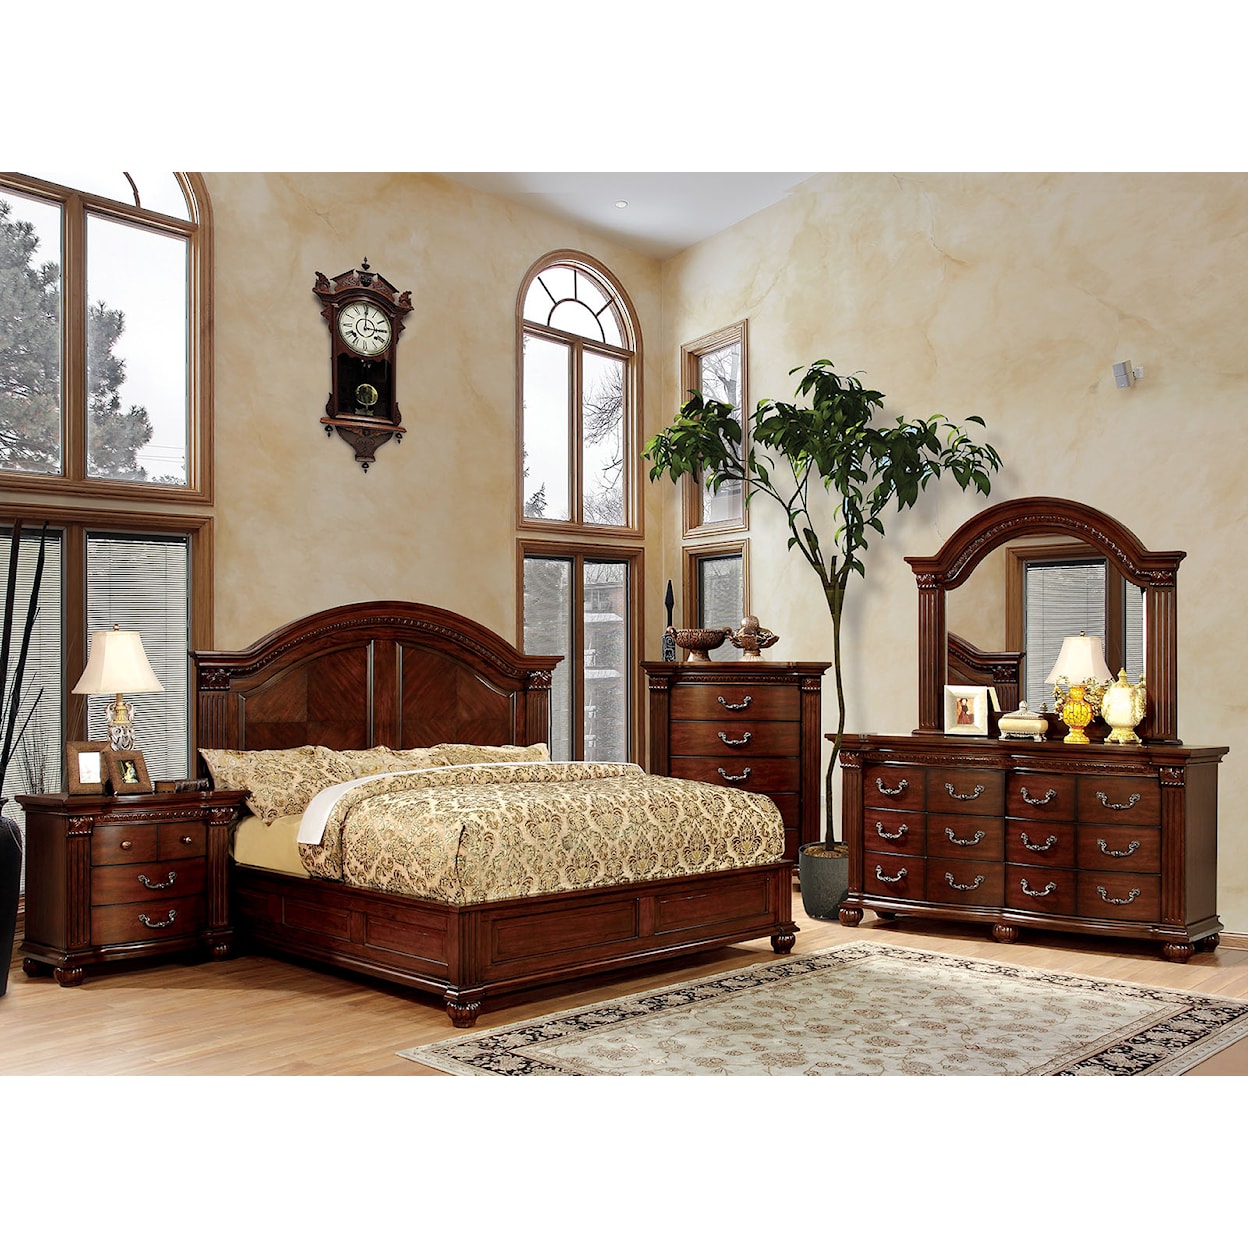 Furniture of America Grandom Queen Bedroom Set